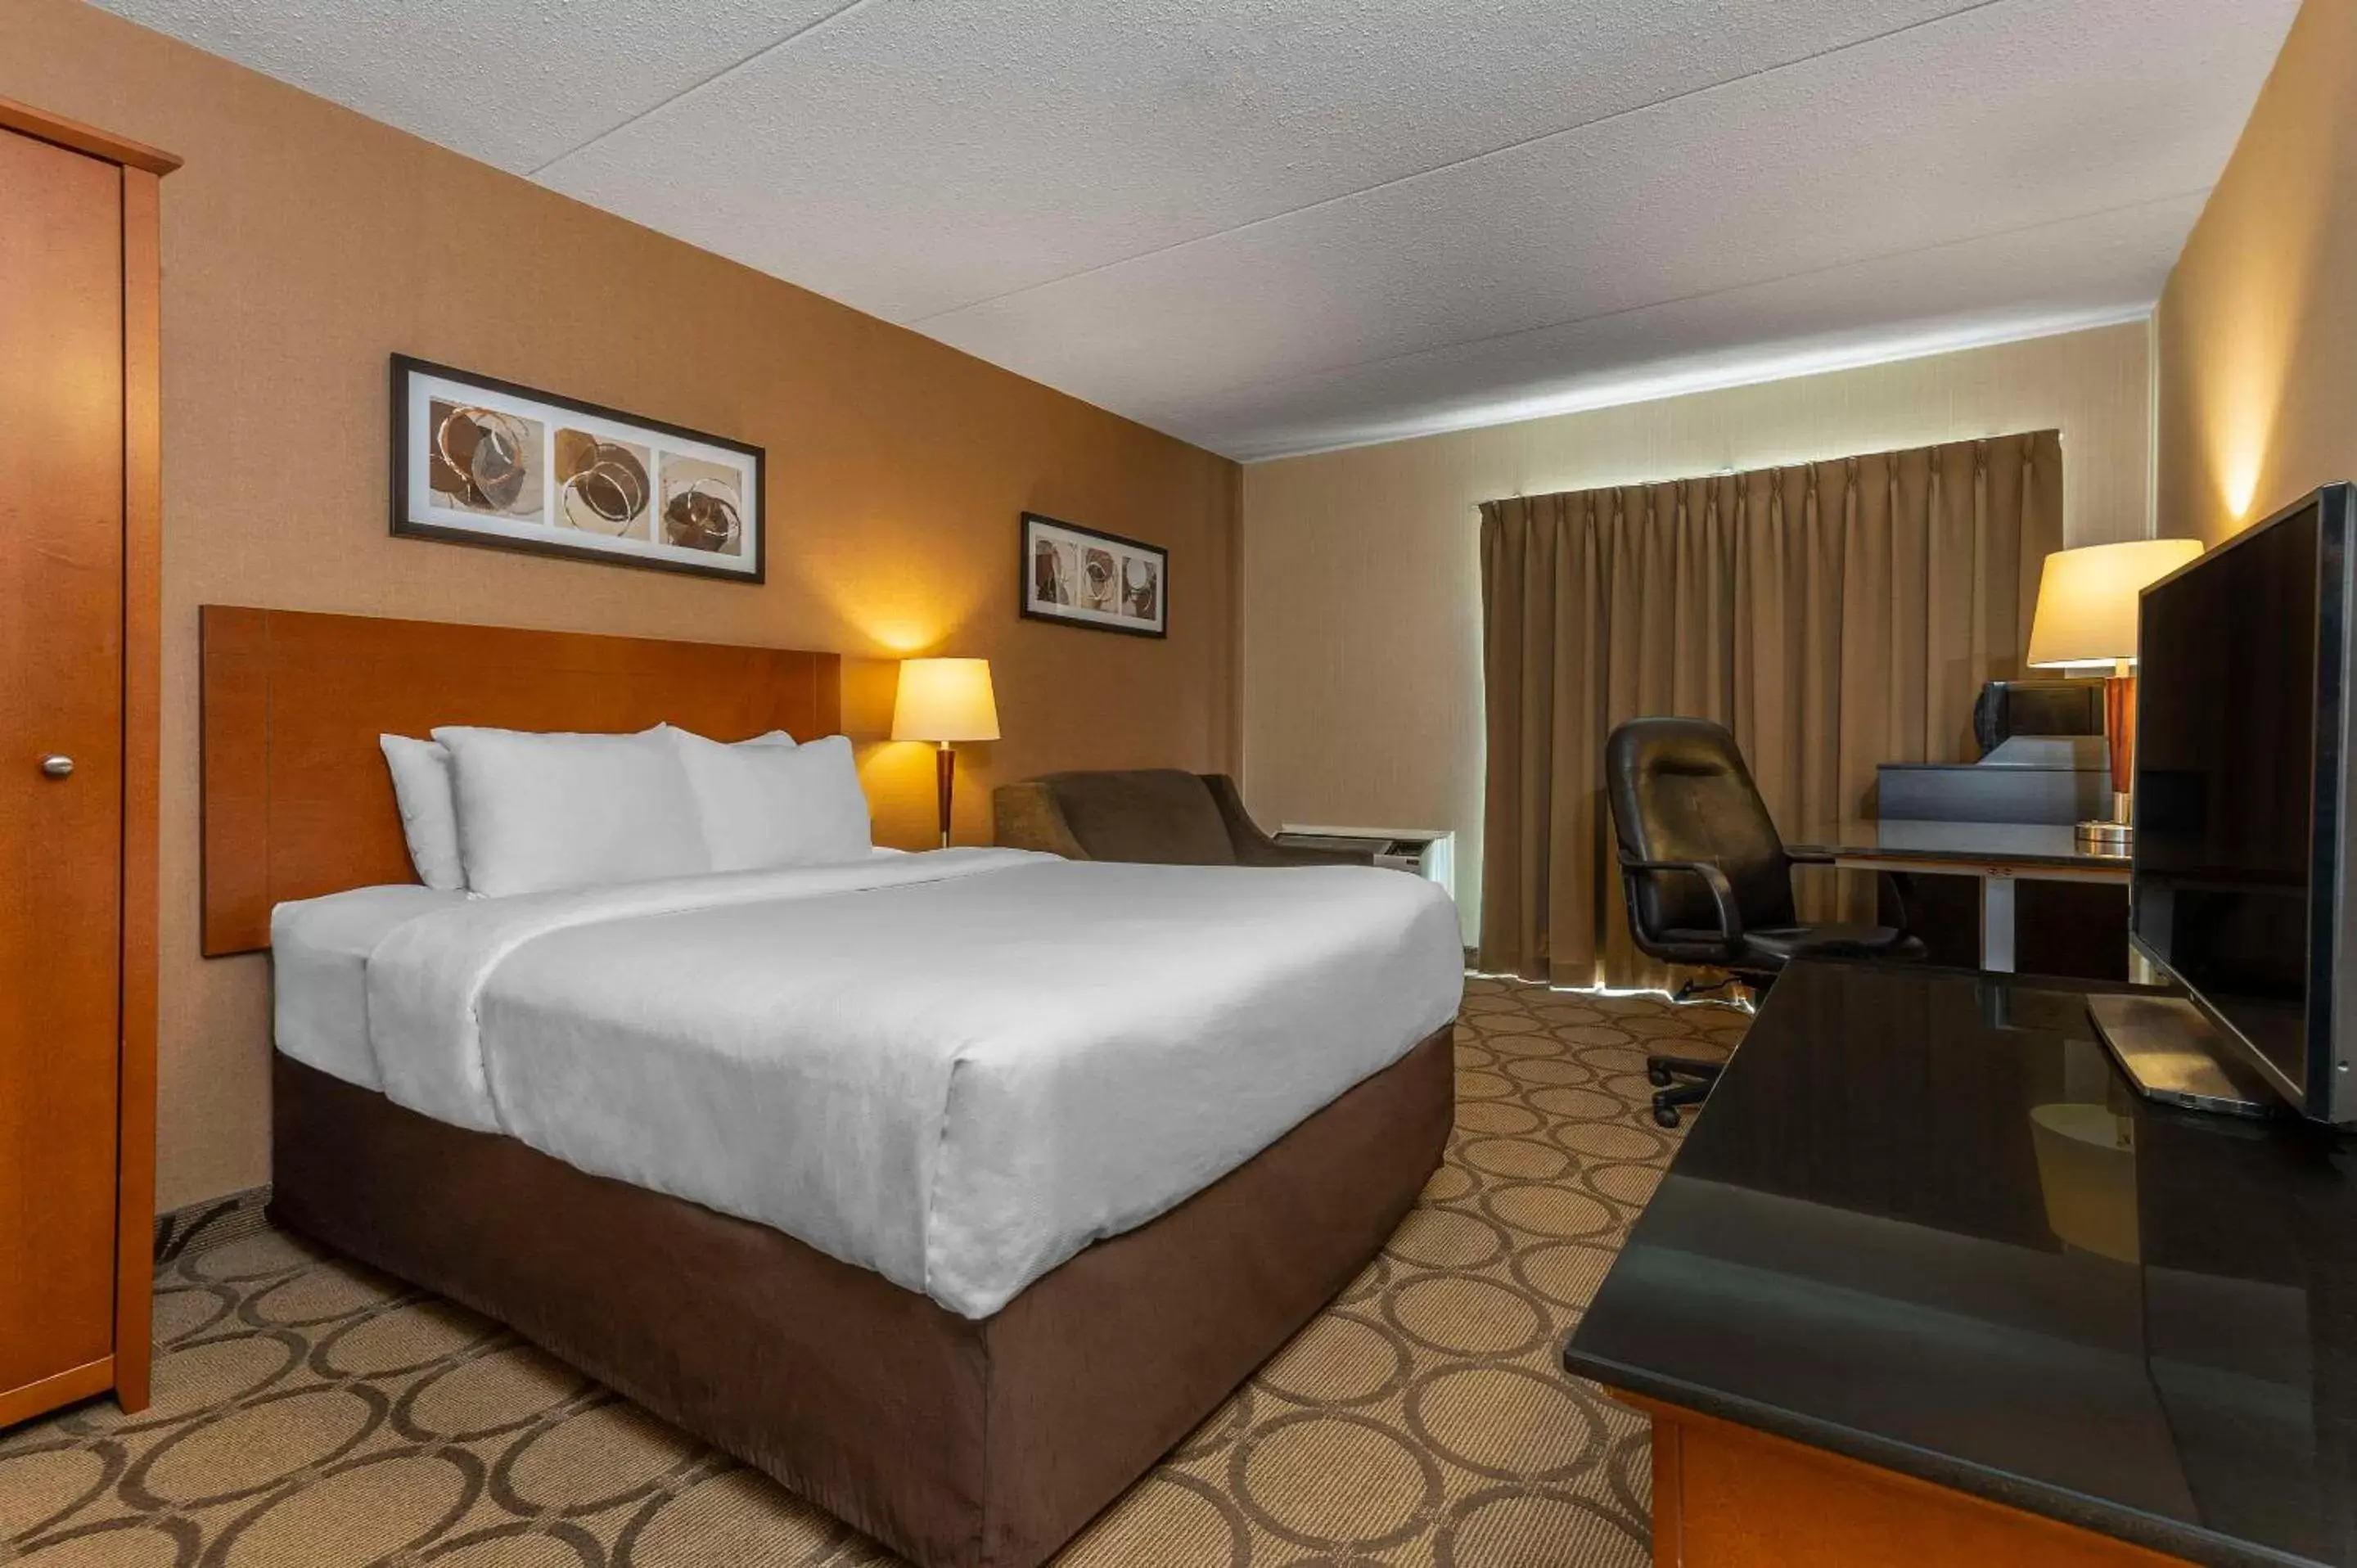 Bedroom, Bed in Comfort Inn Baie-Comeau